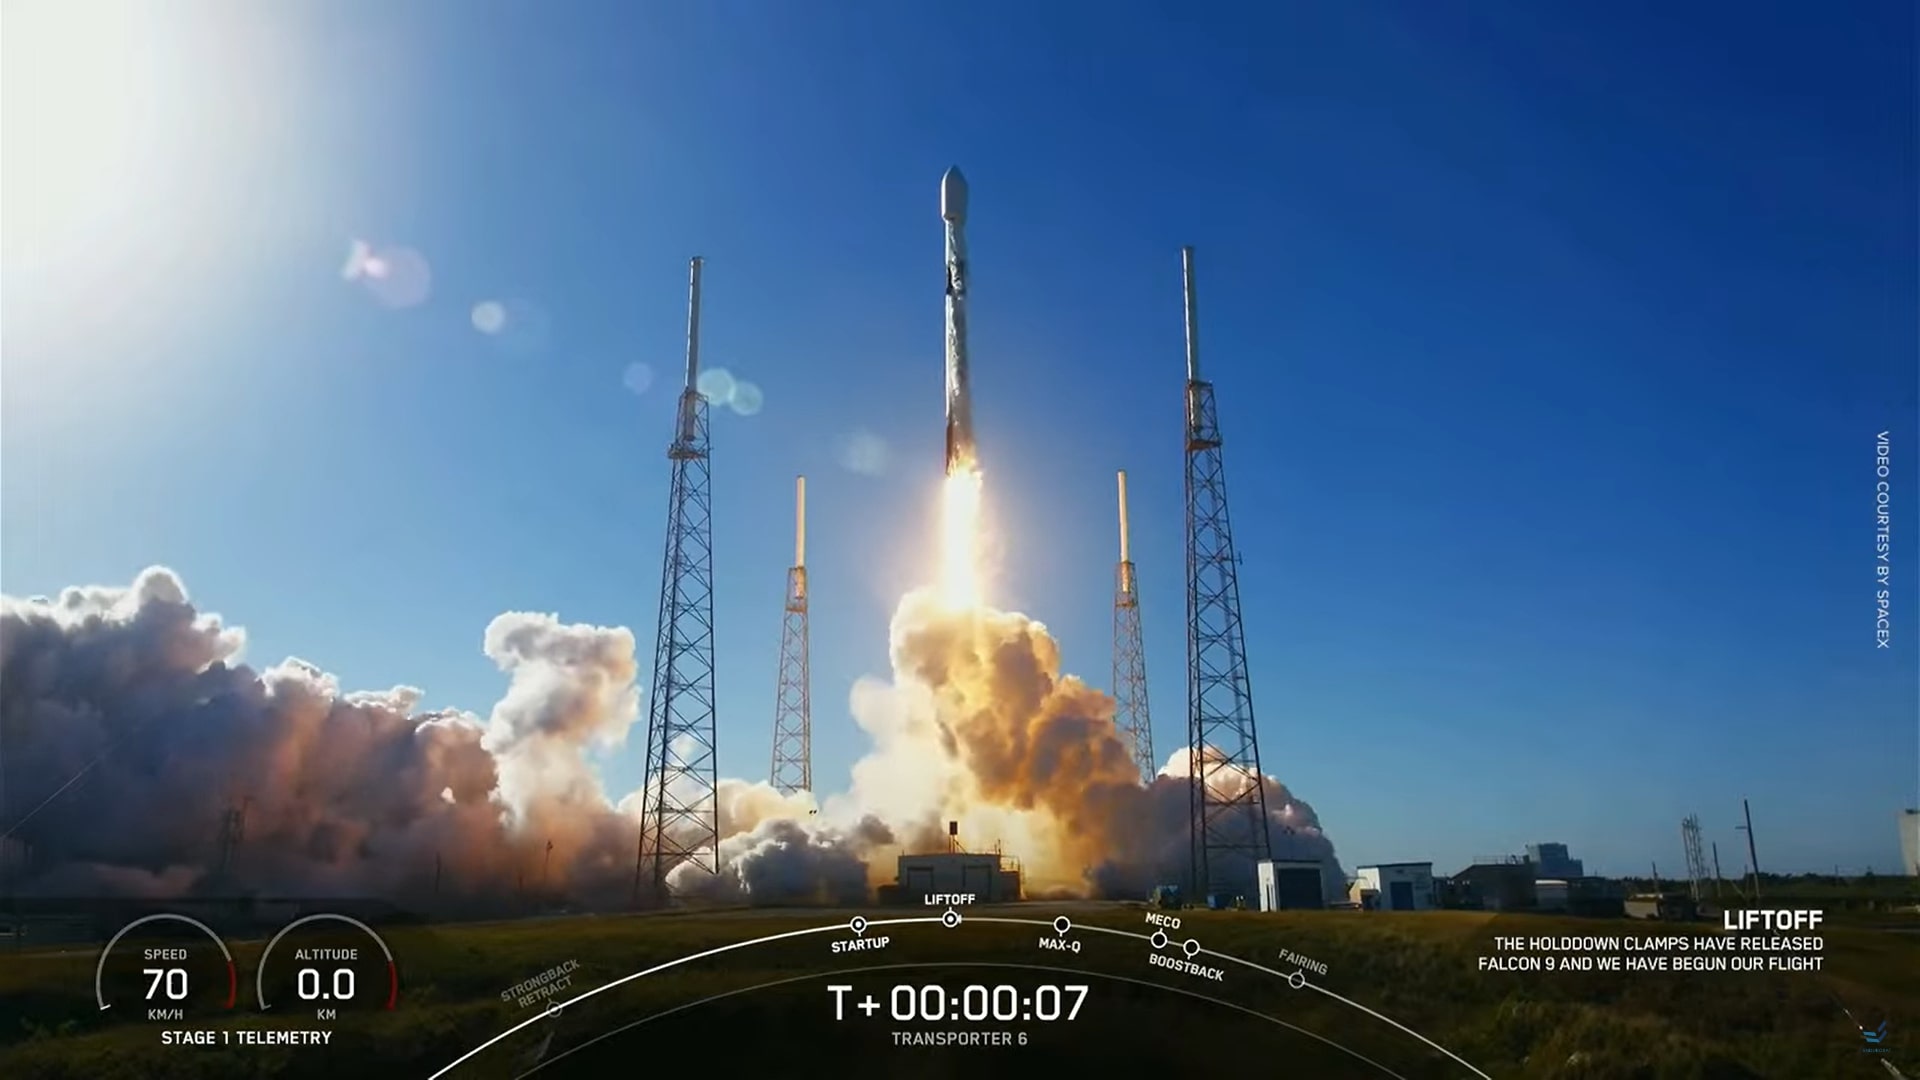 Platform 2 is in orbit endurosat shared satellite service 2023 1